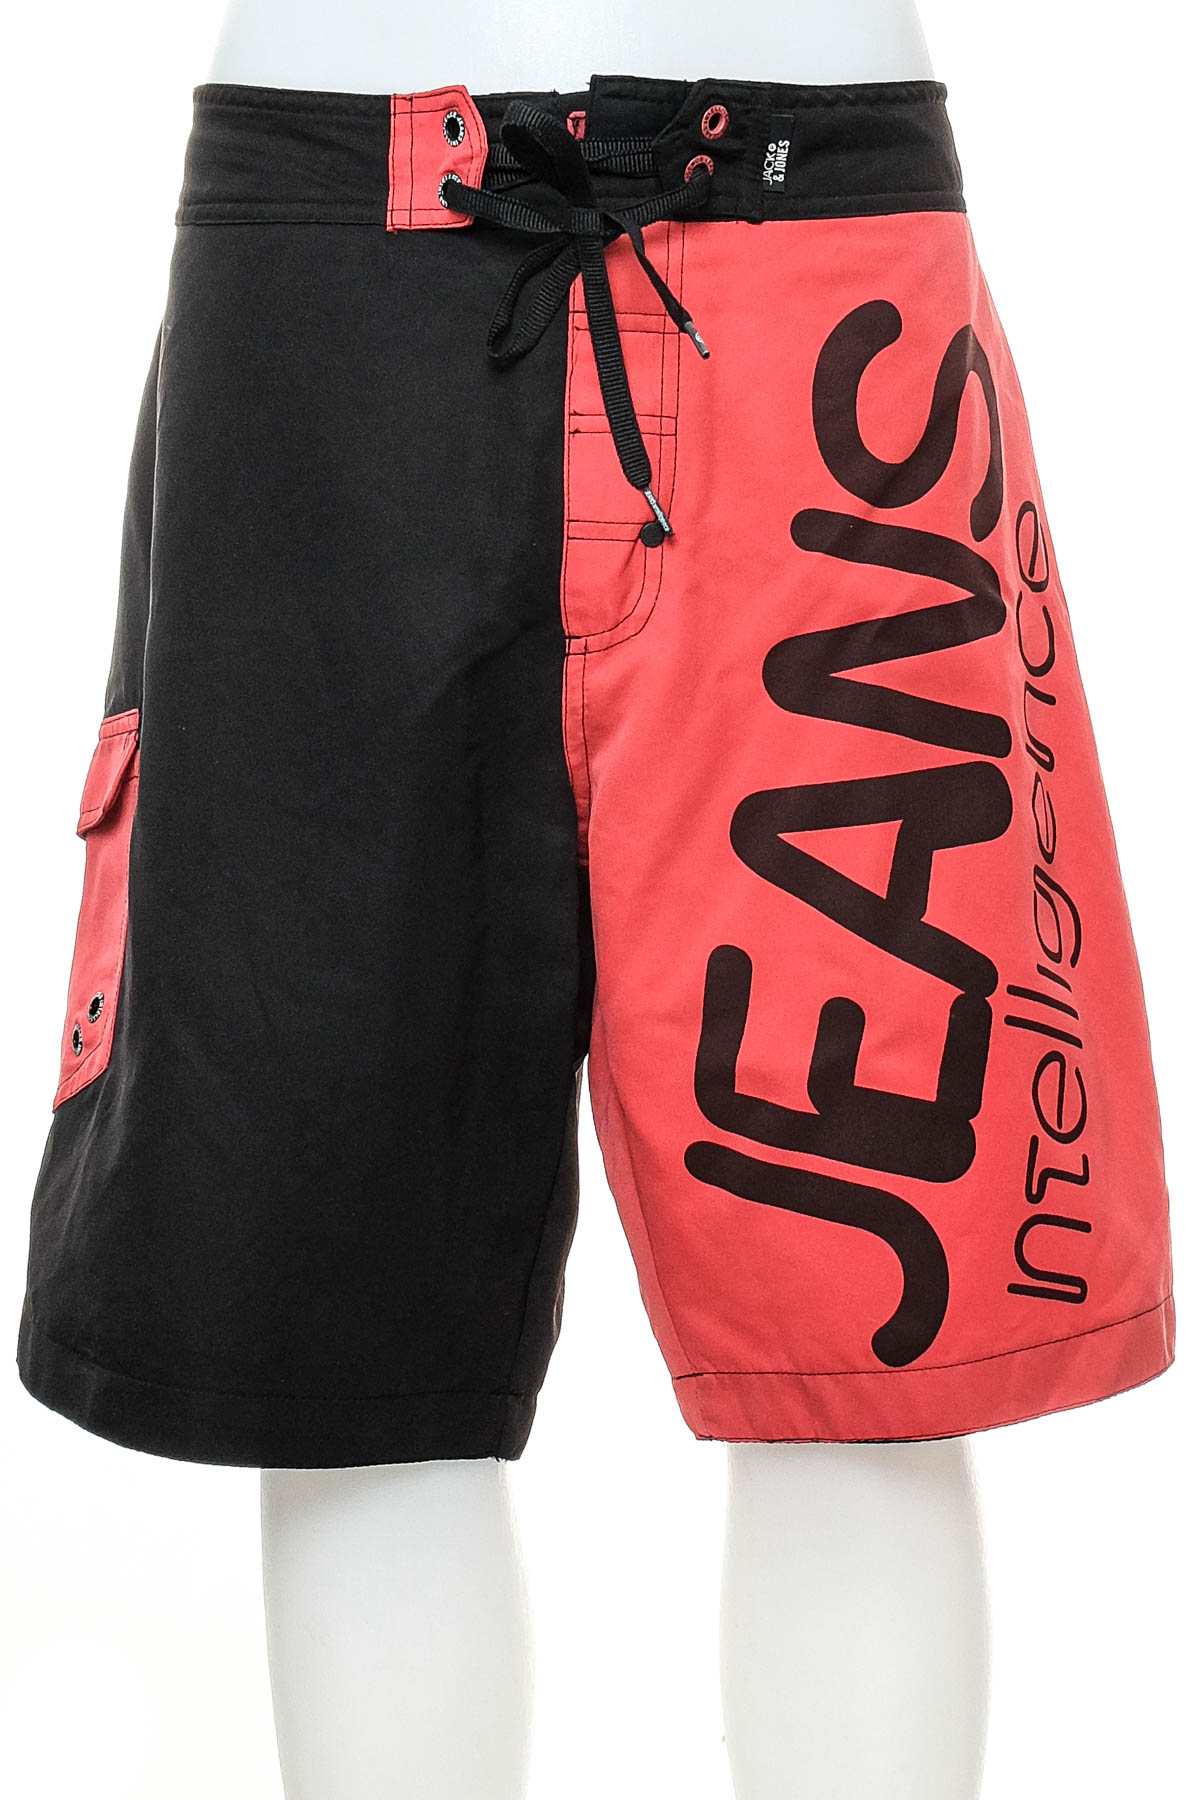 Men's shorts - JACK & JONES - 0